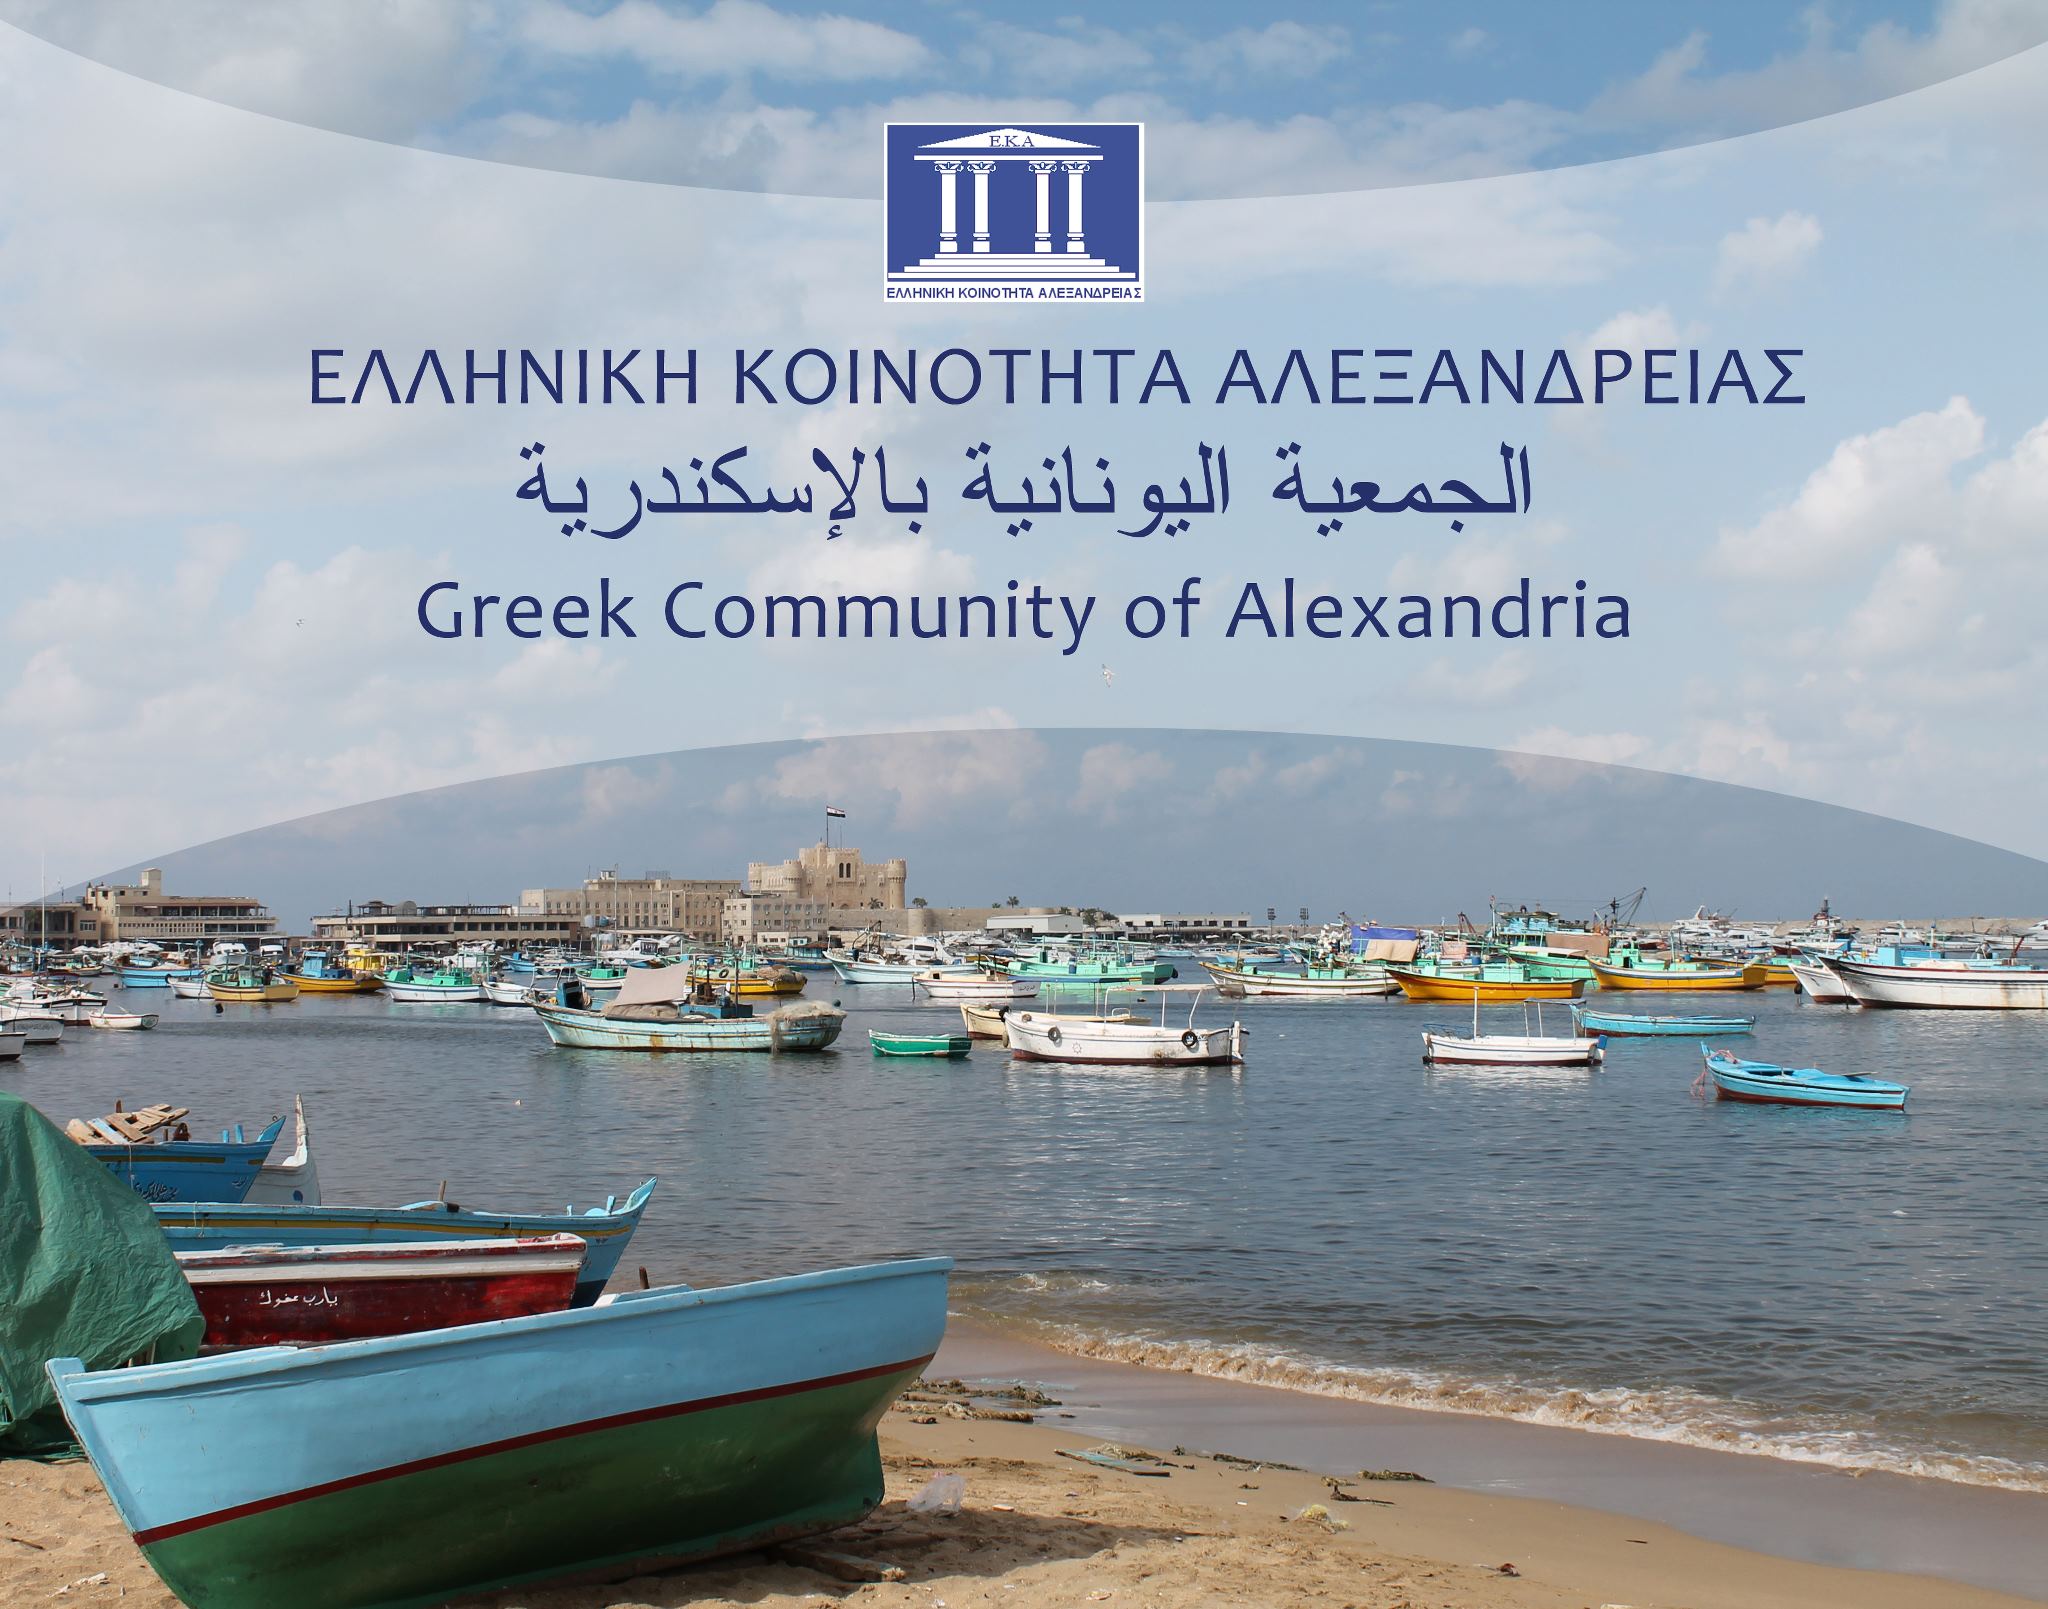 Ο Ανδρέας Βαφειάδης είναι ο νέος πρόεδρος της Ελληνικής Κοινότητας Αλεξανδρείας